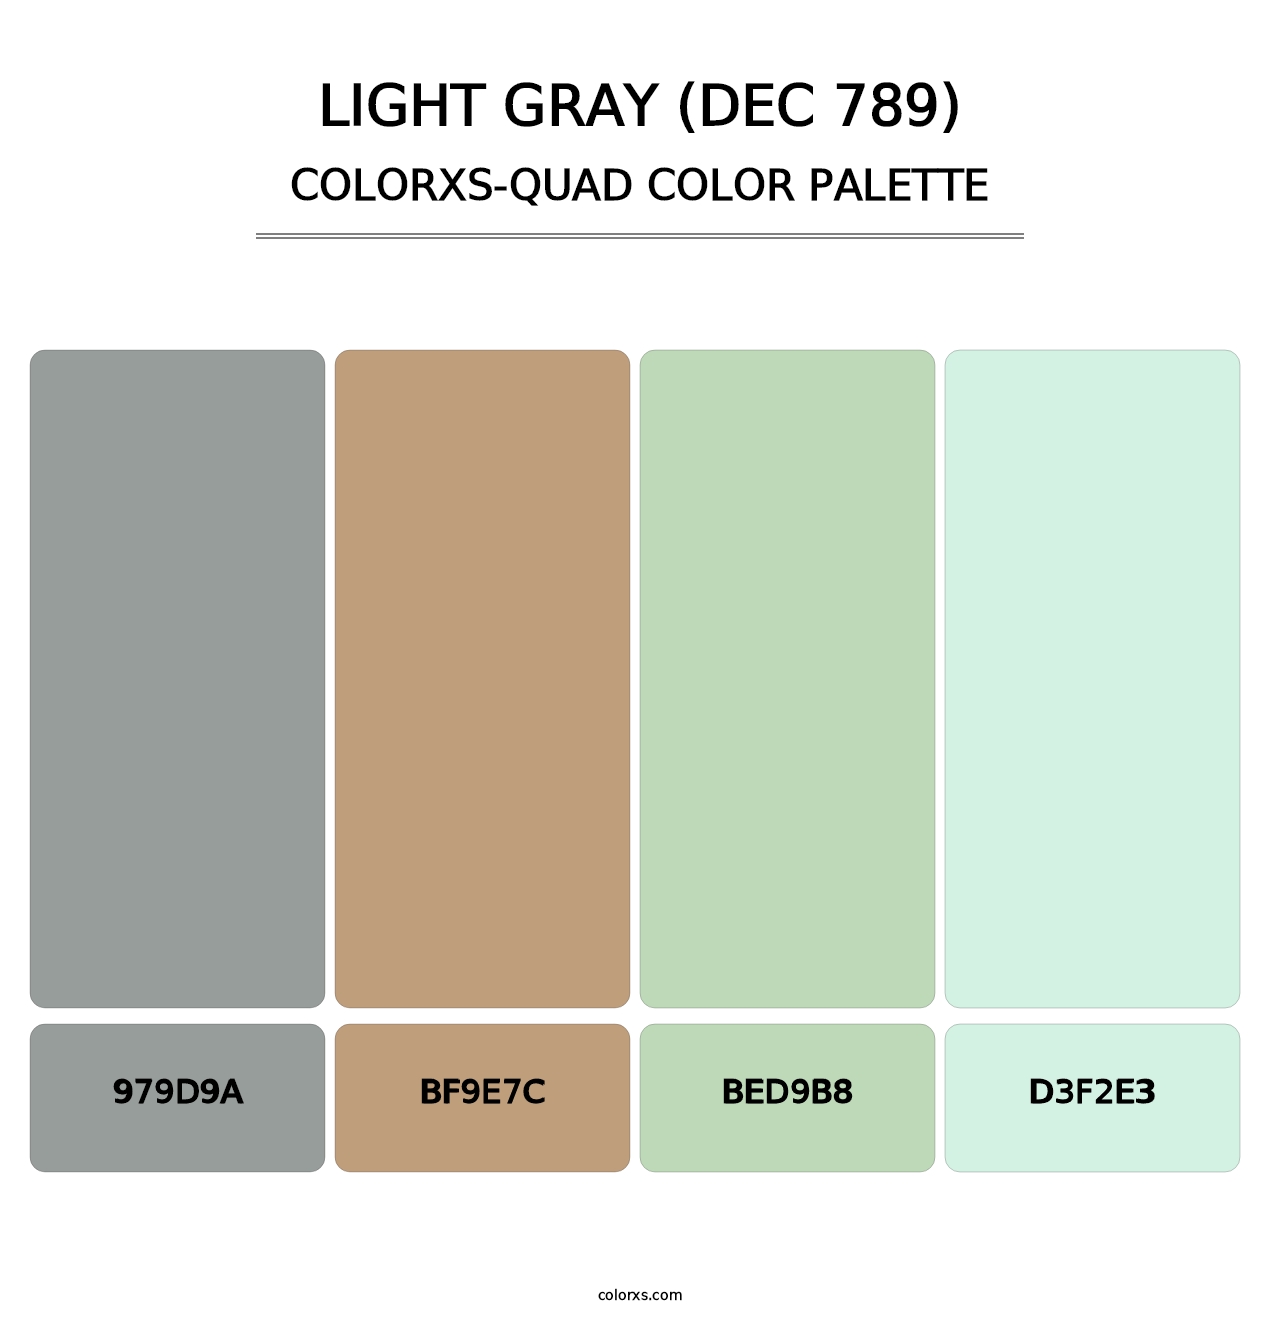 Light Gray (DEC 789) - Colorxs Quad Palette